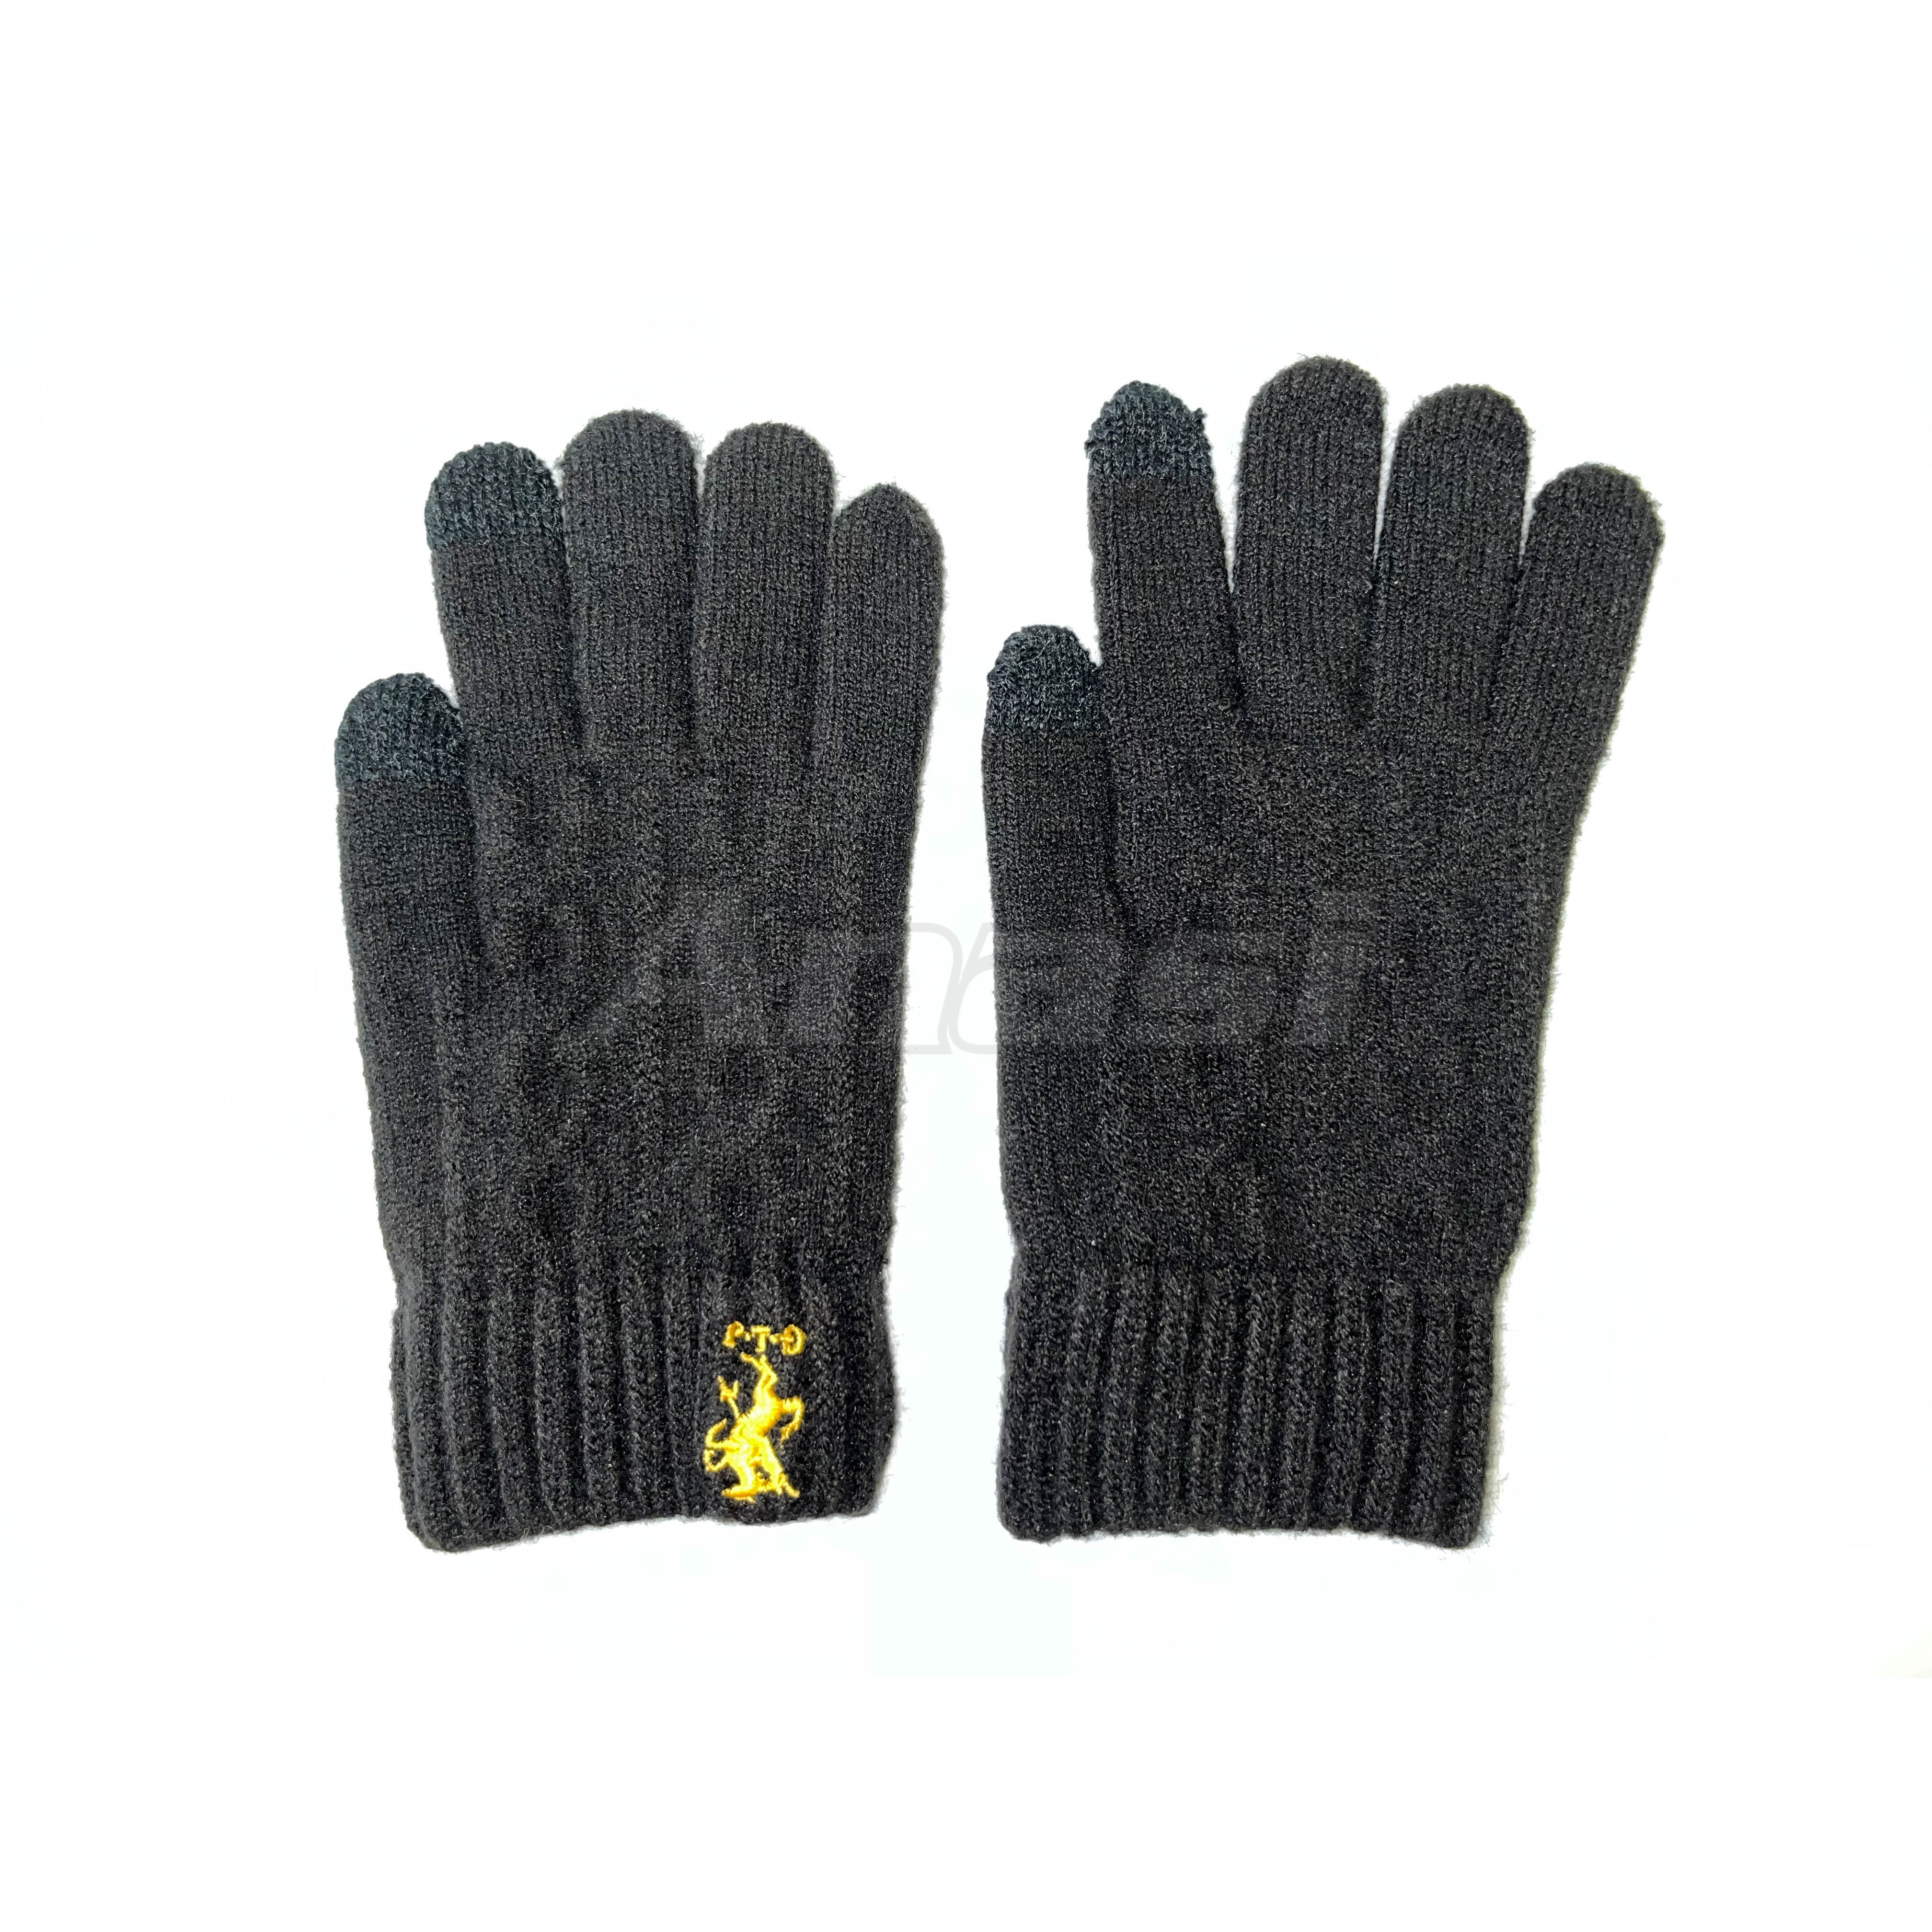 Găng tay len nam Anasi GL343 - Chất len mềm cao cấp, không xù ngứa